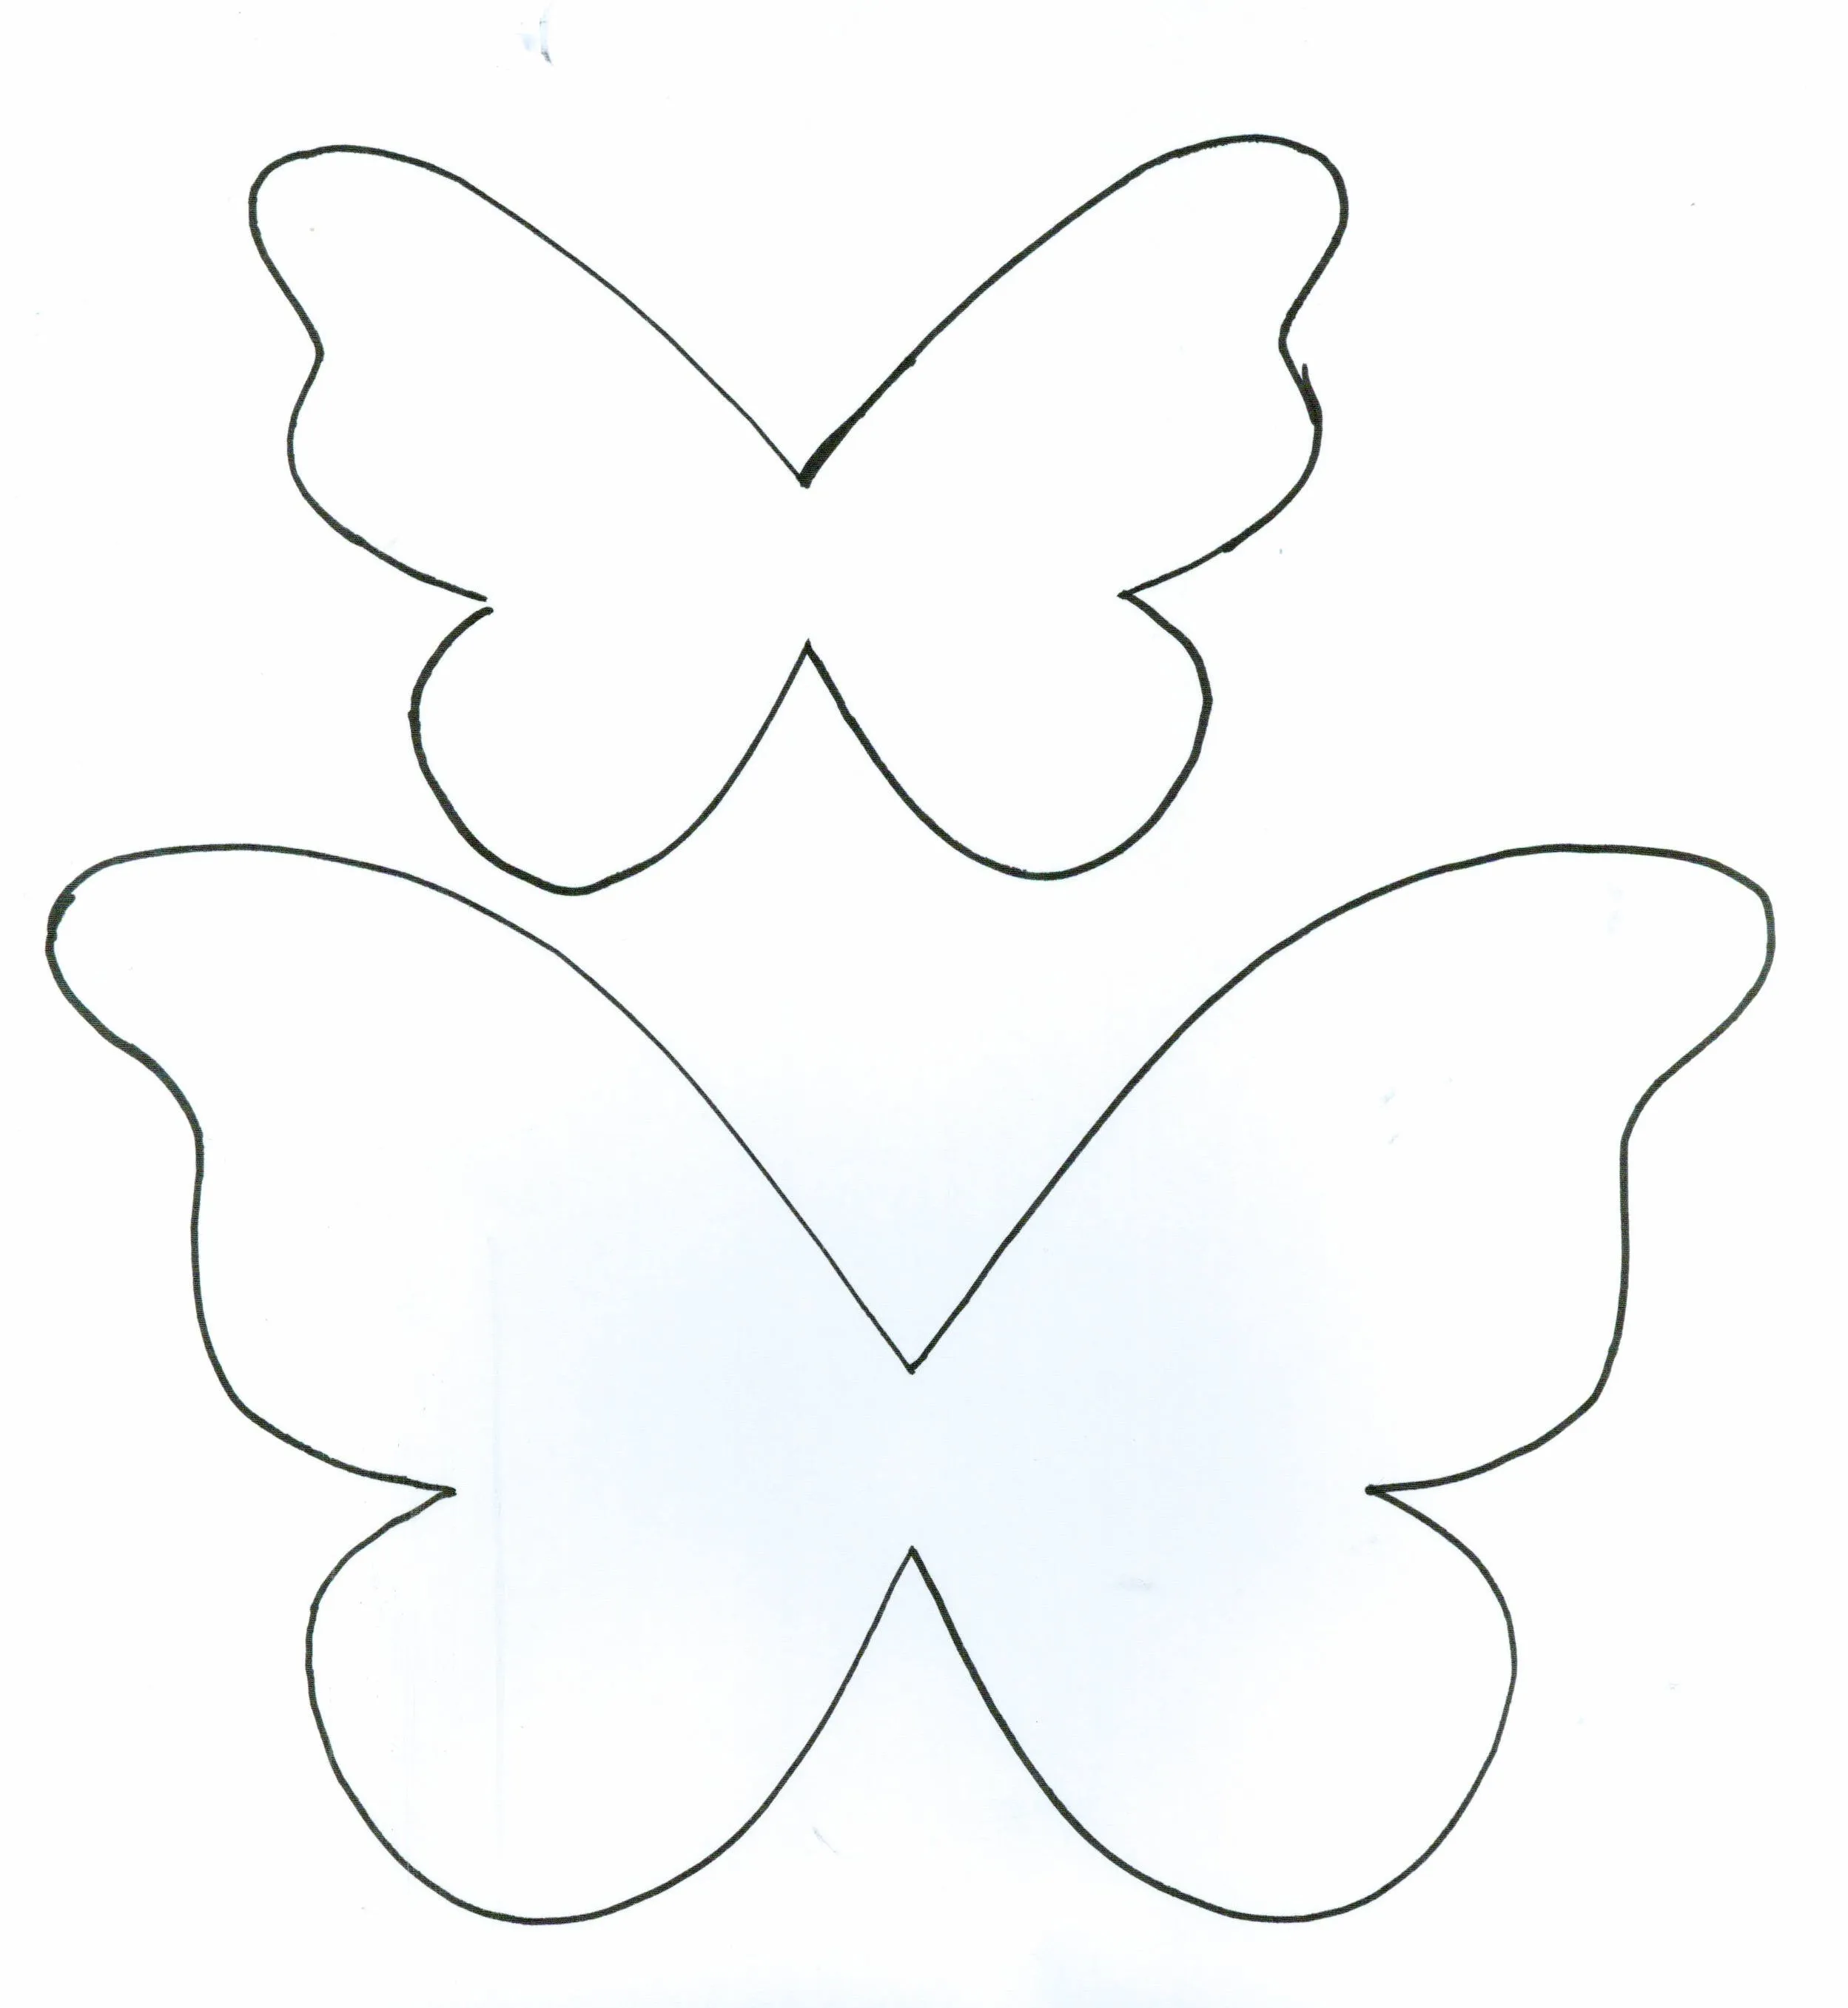 mariposas de papel - Buscar con Google | Fiori | Pinterest